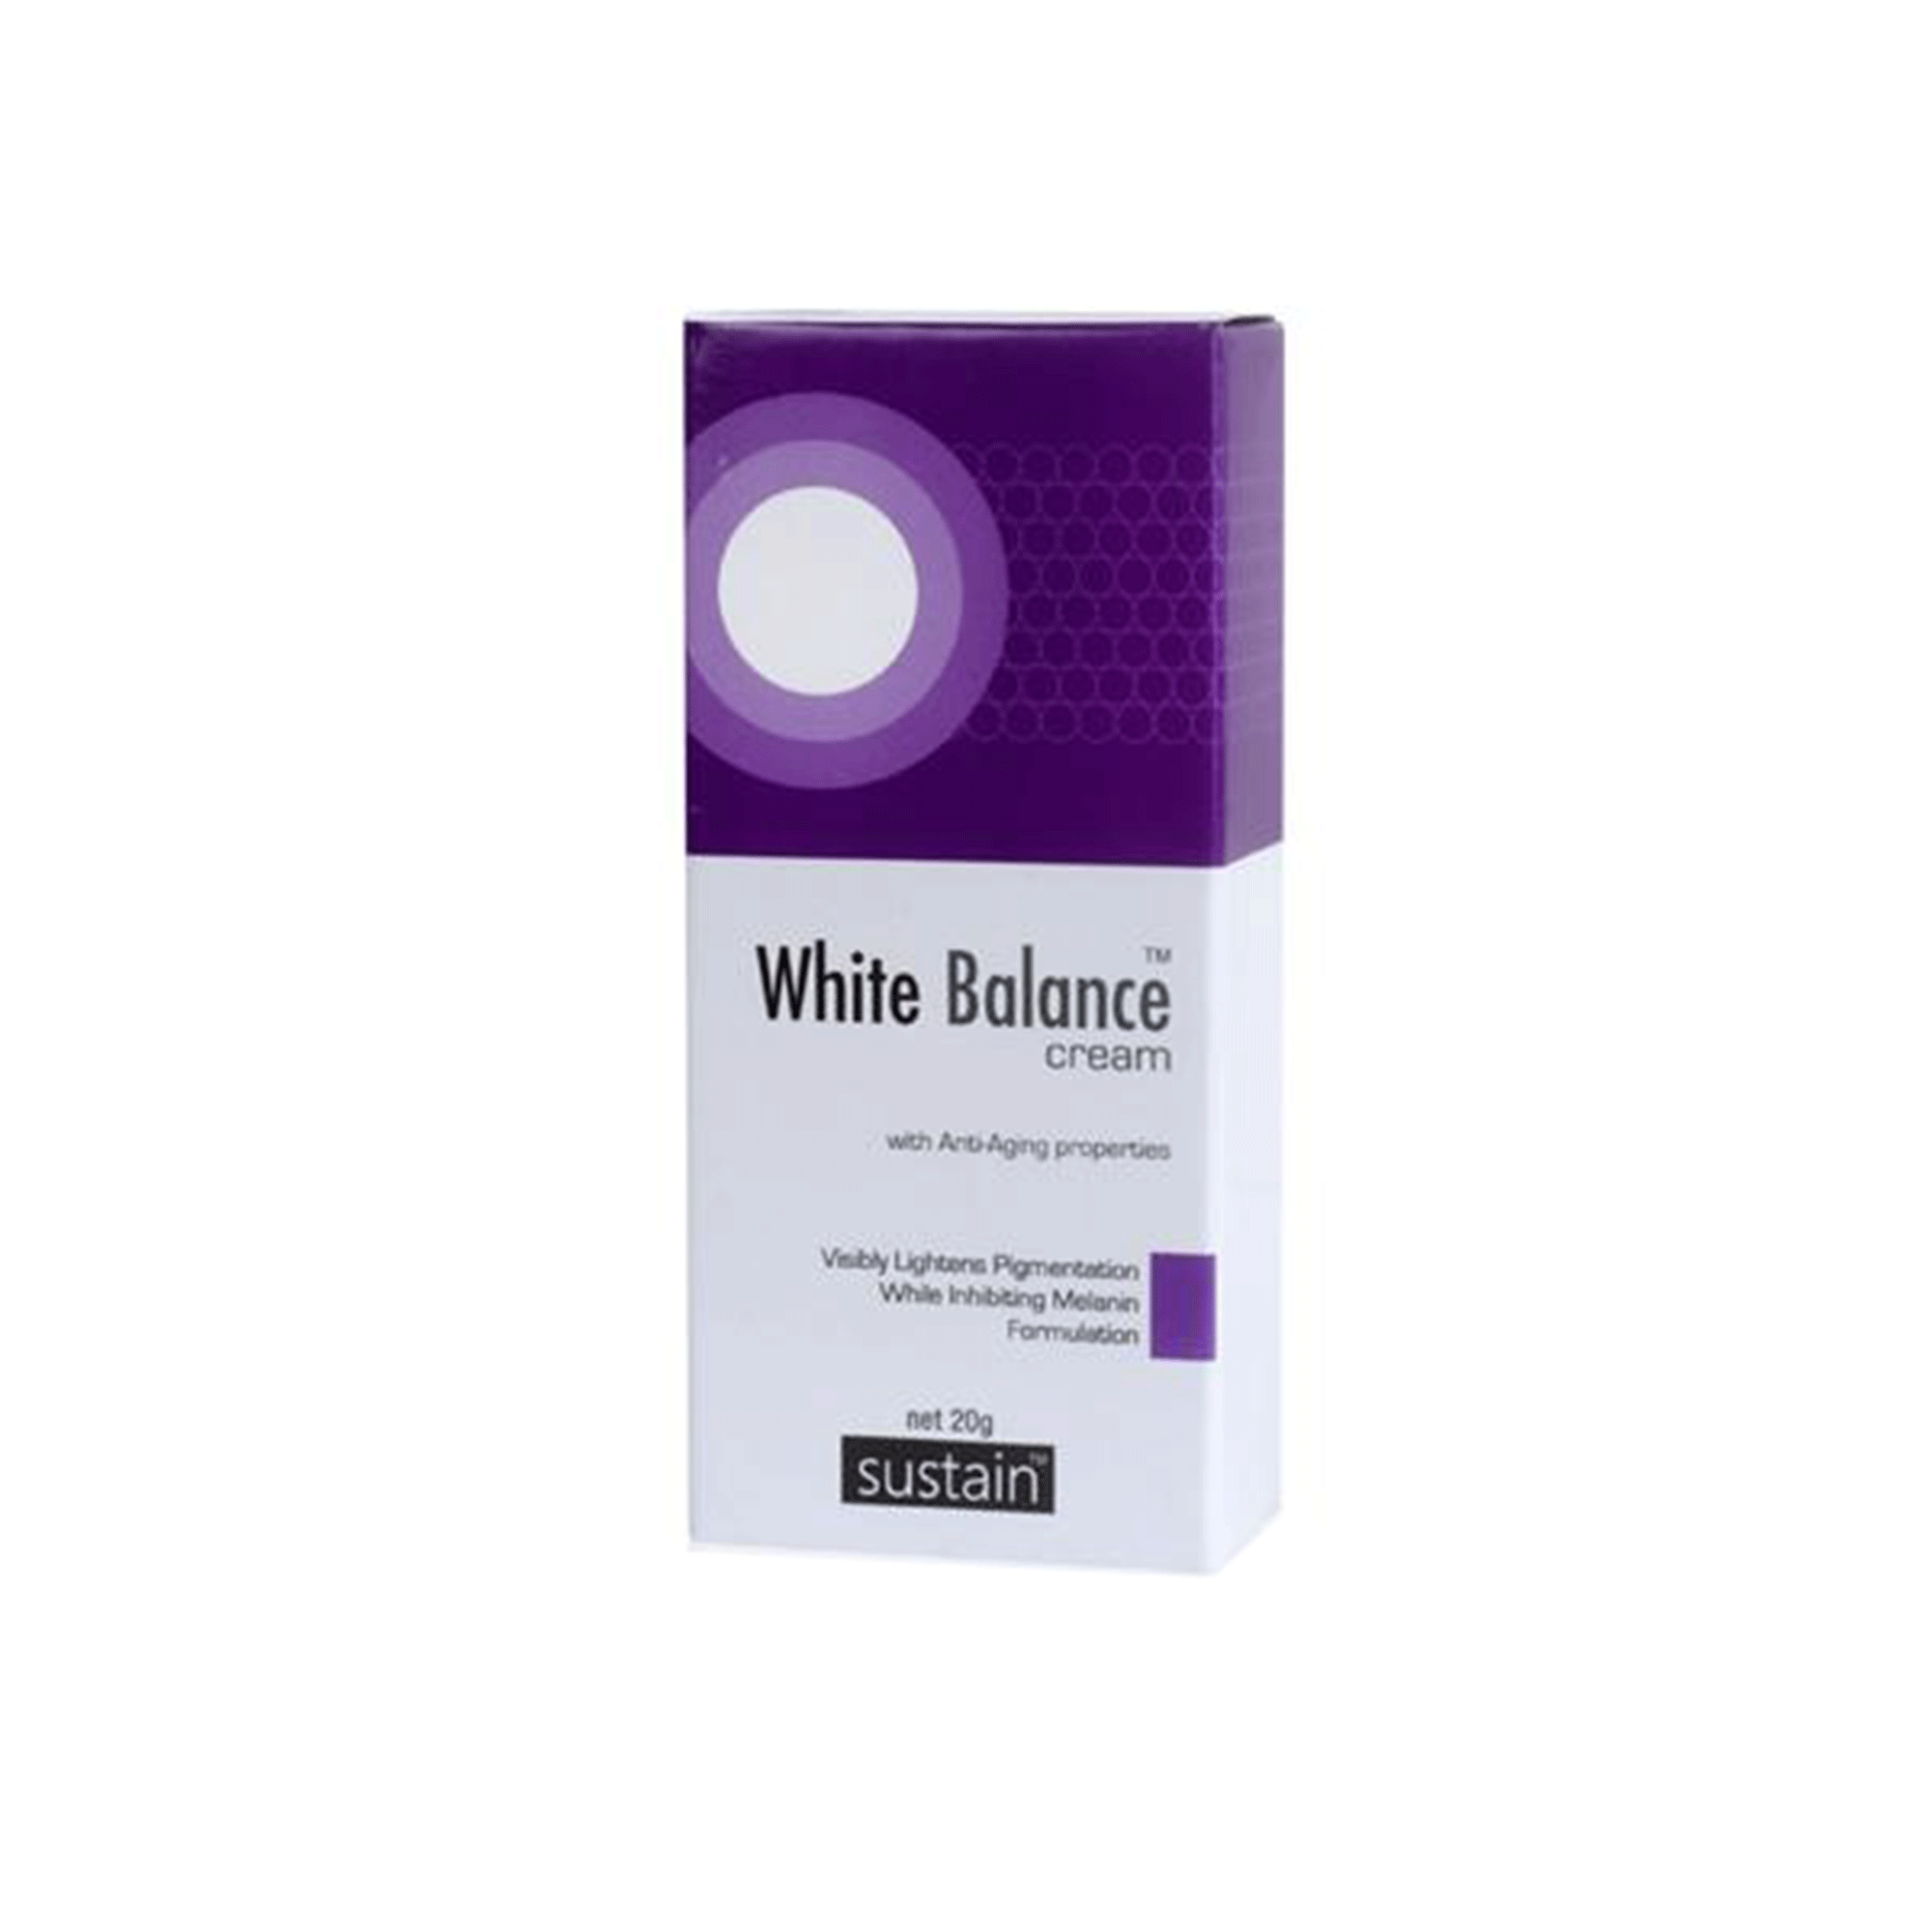 White Balance Cream 20g